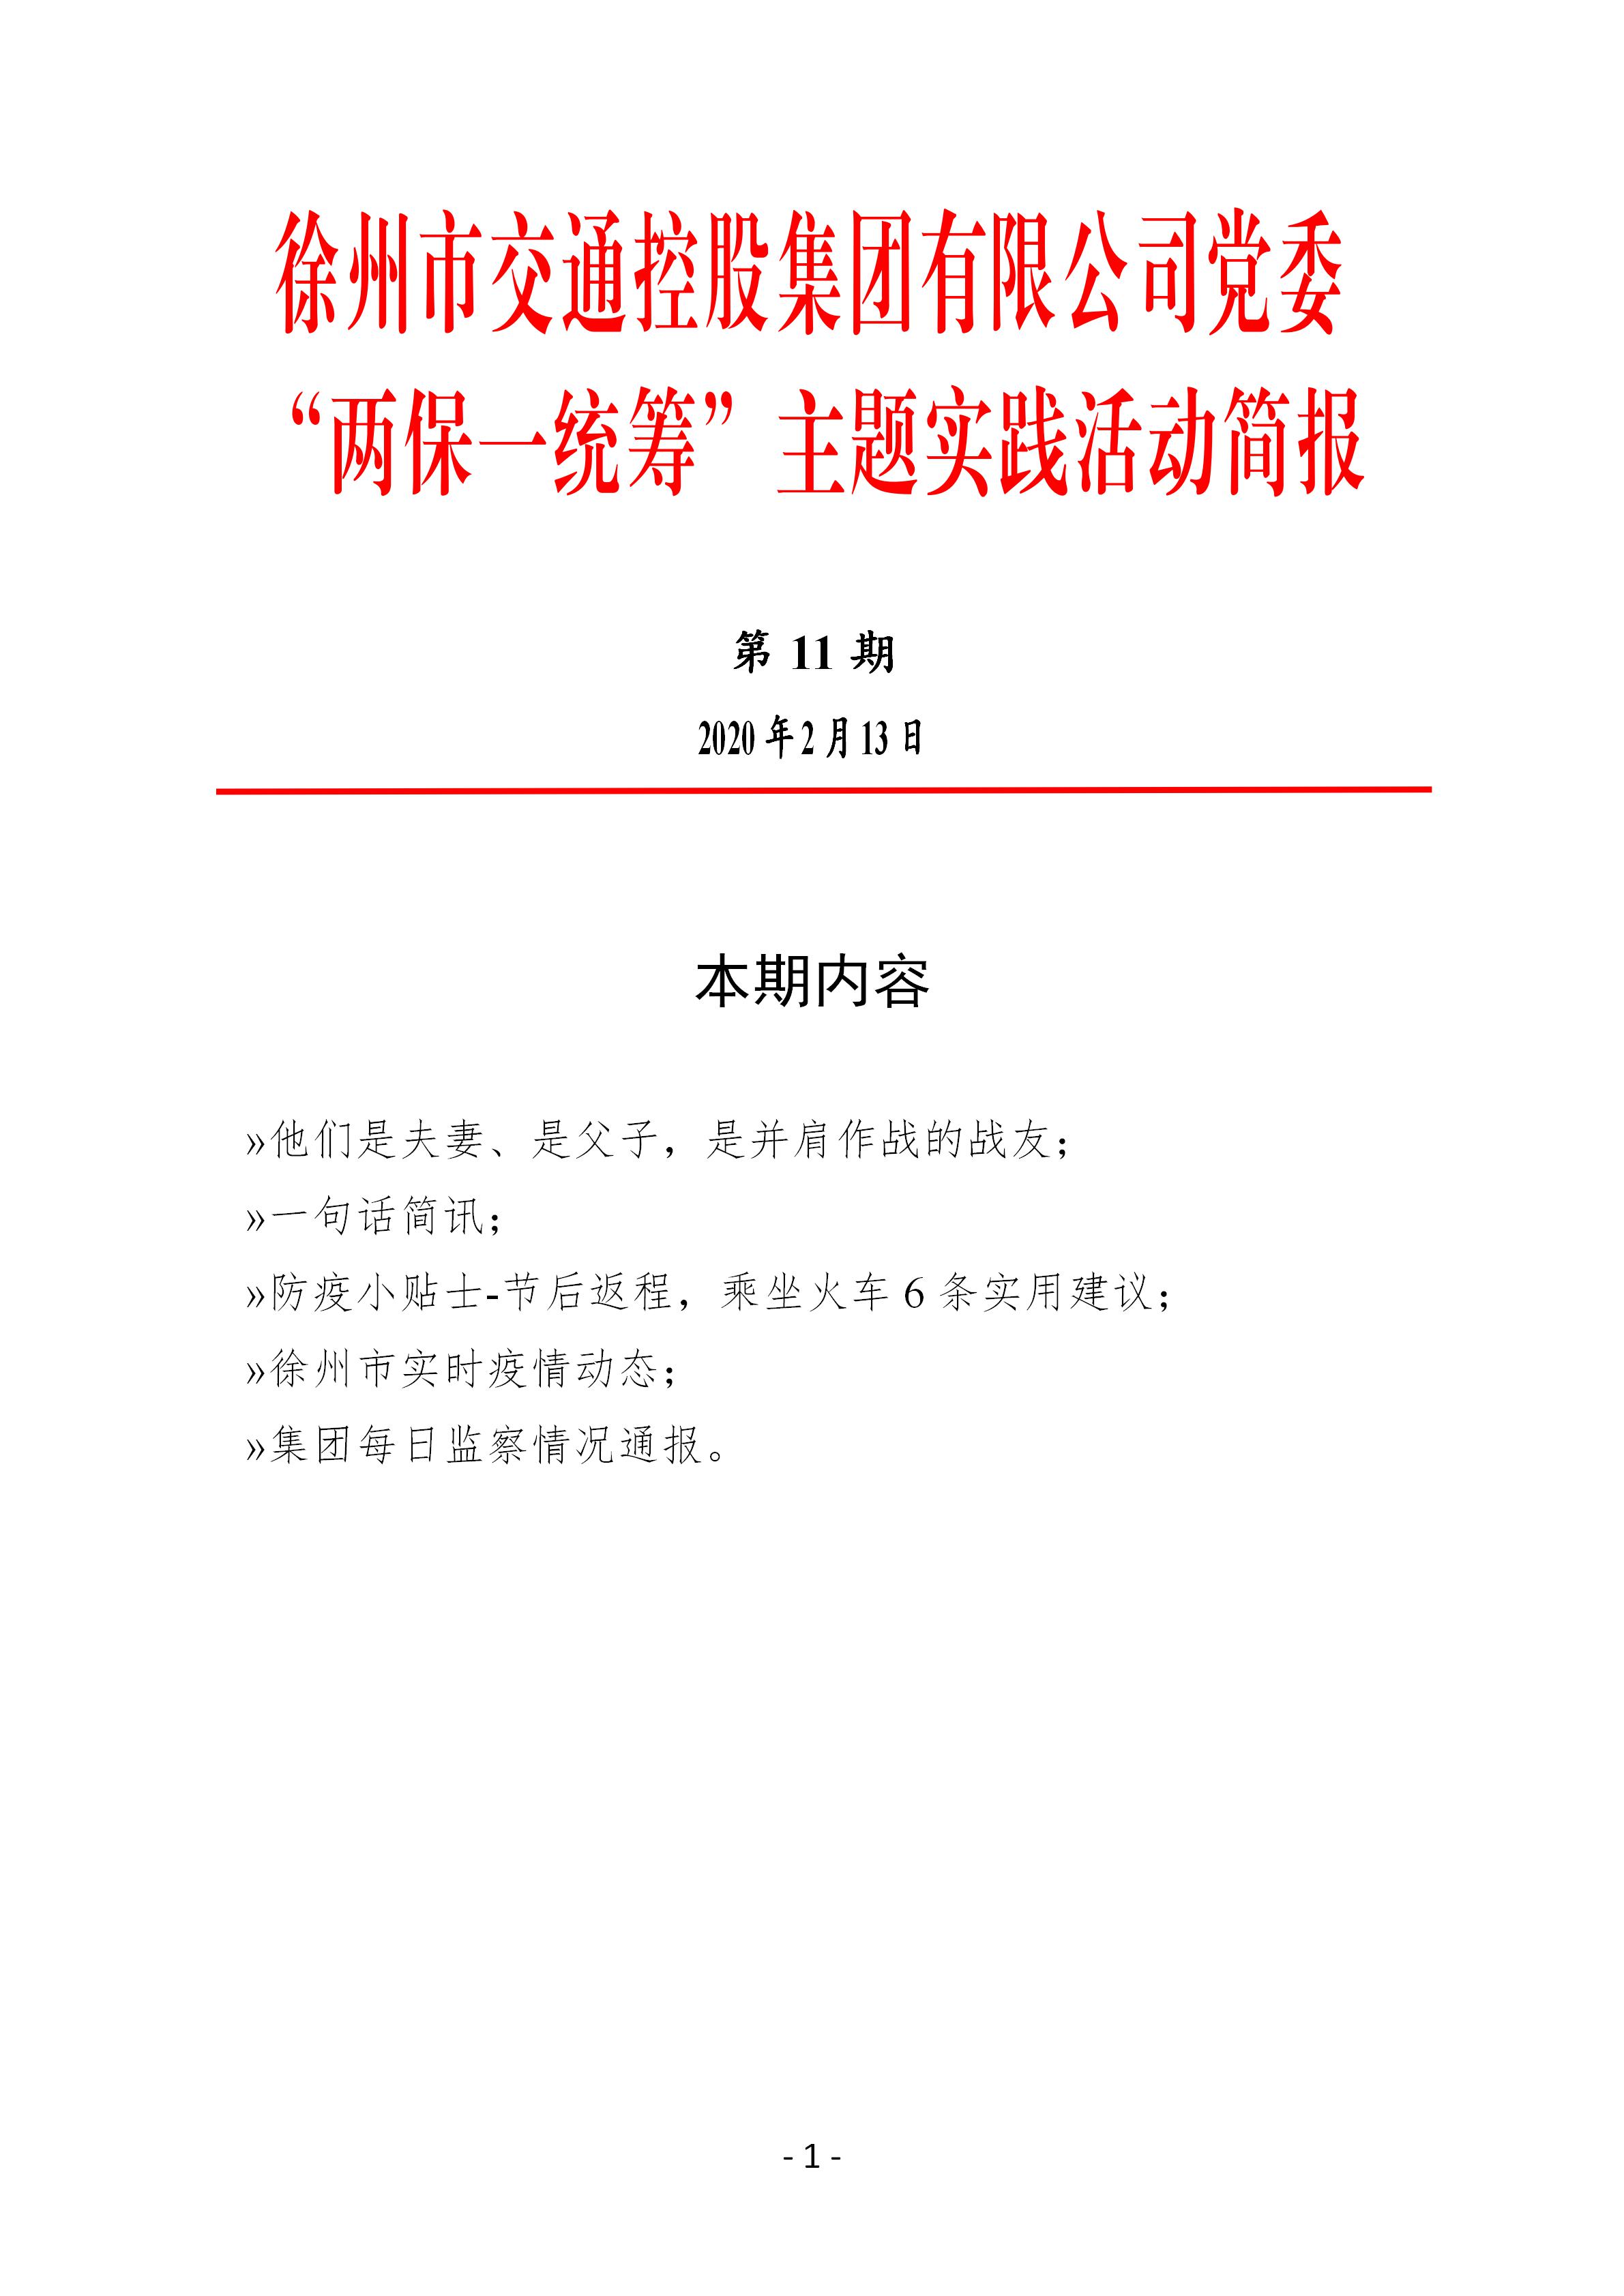 （第十一期2.13）徐州市交通控股集团党委“两保一统筹”主题实践活动简报